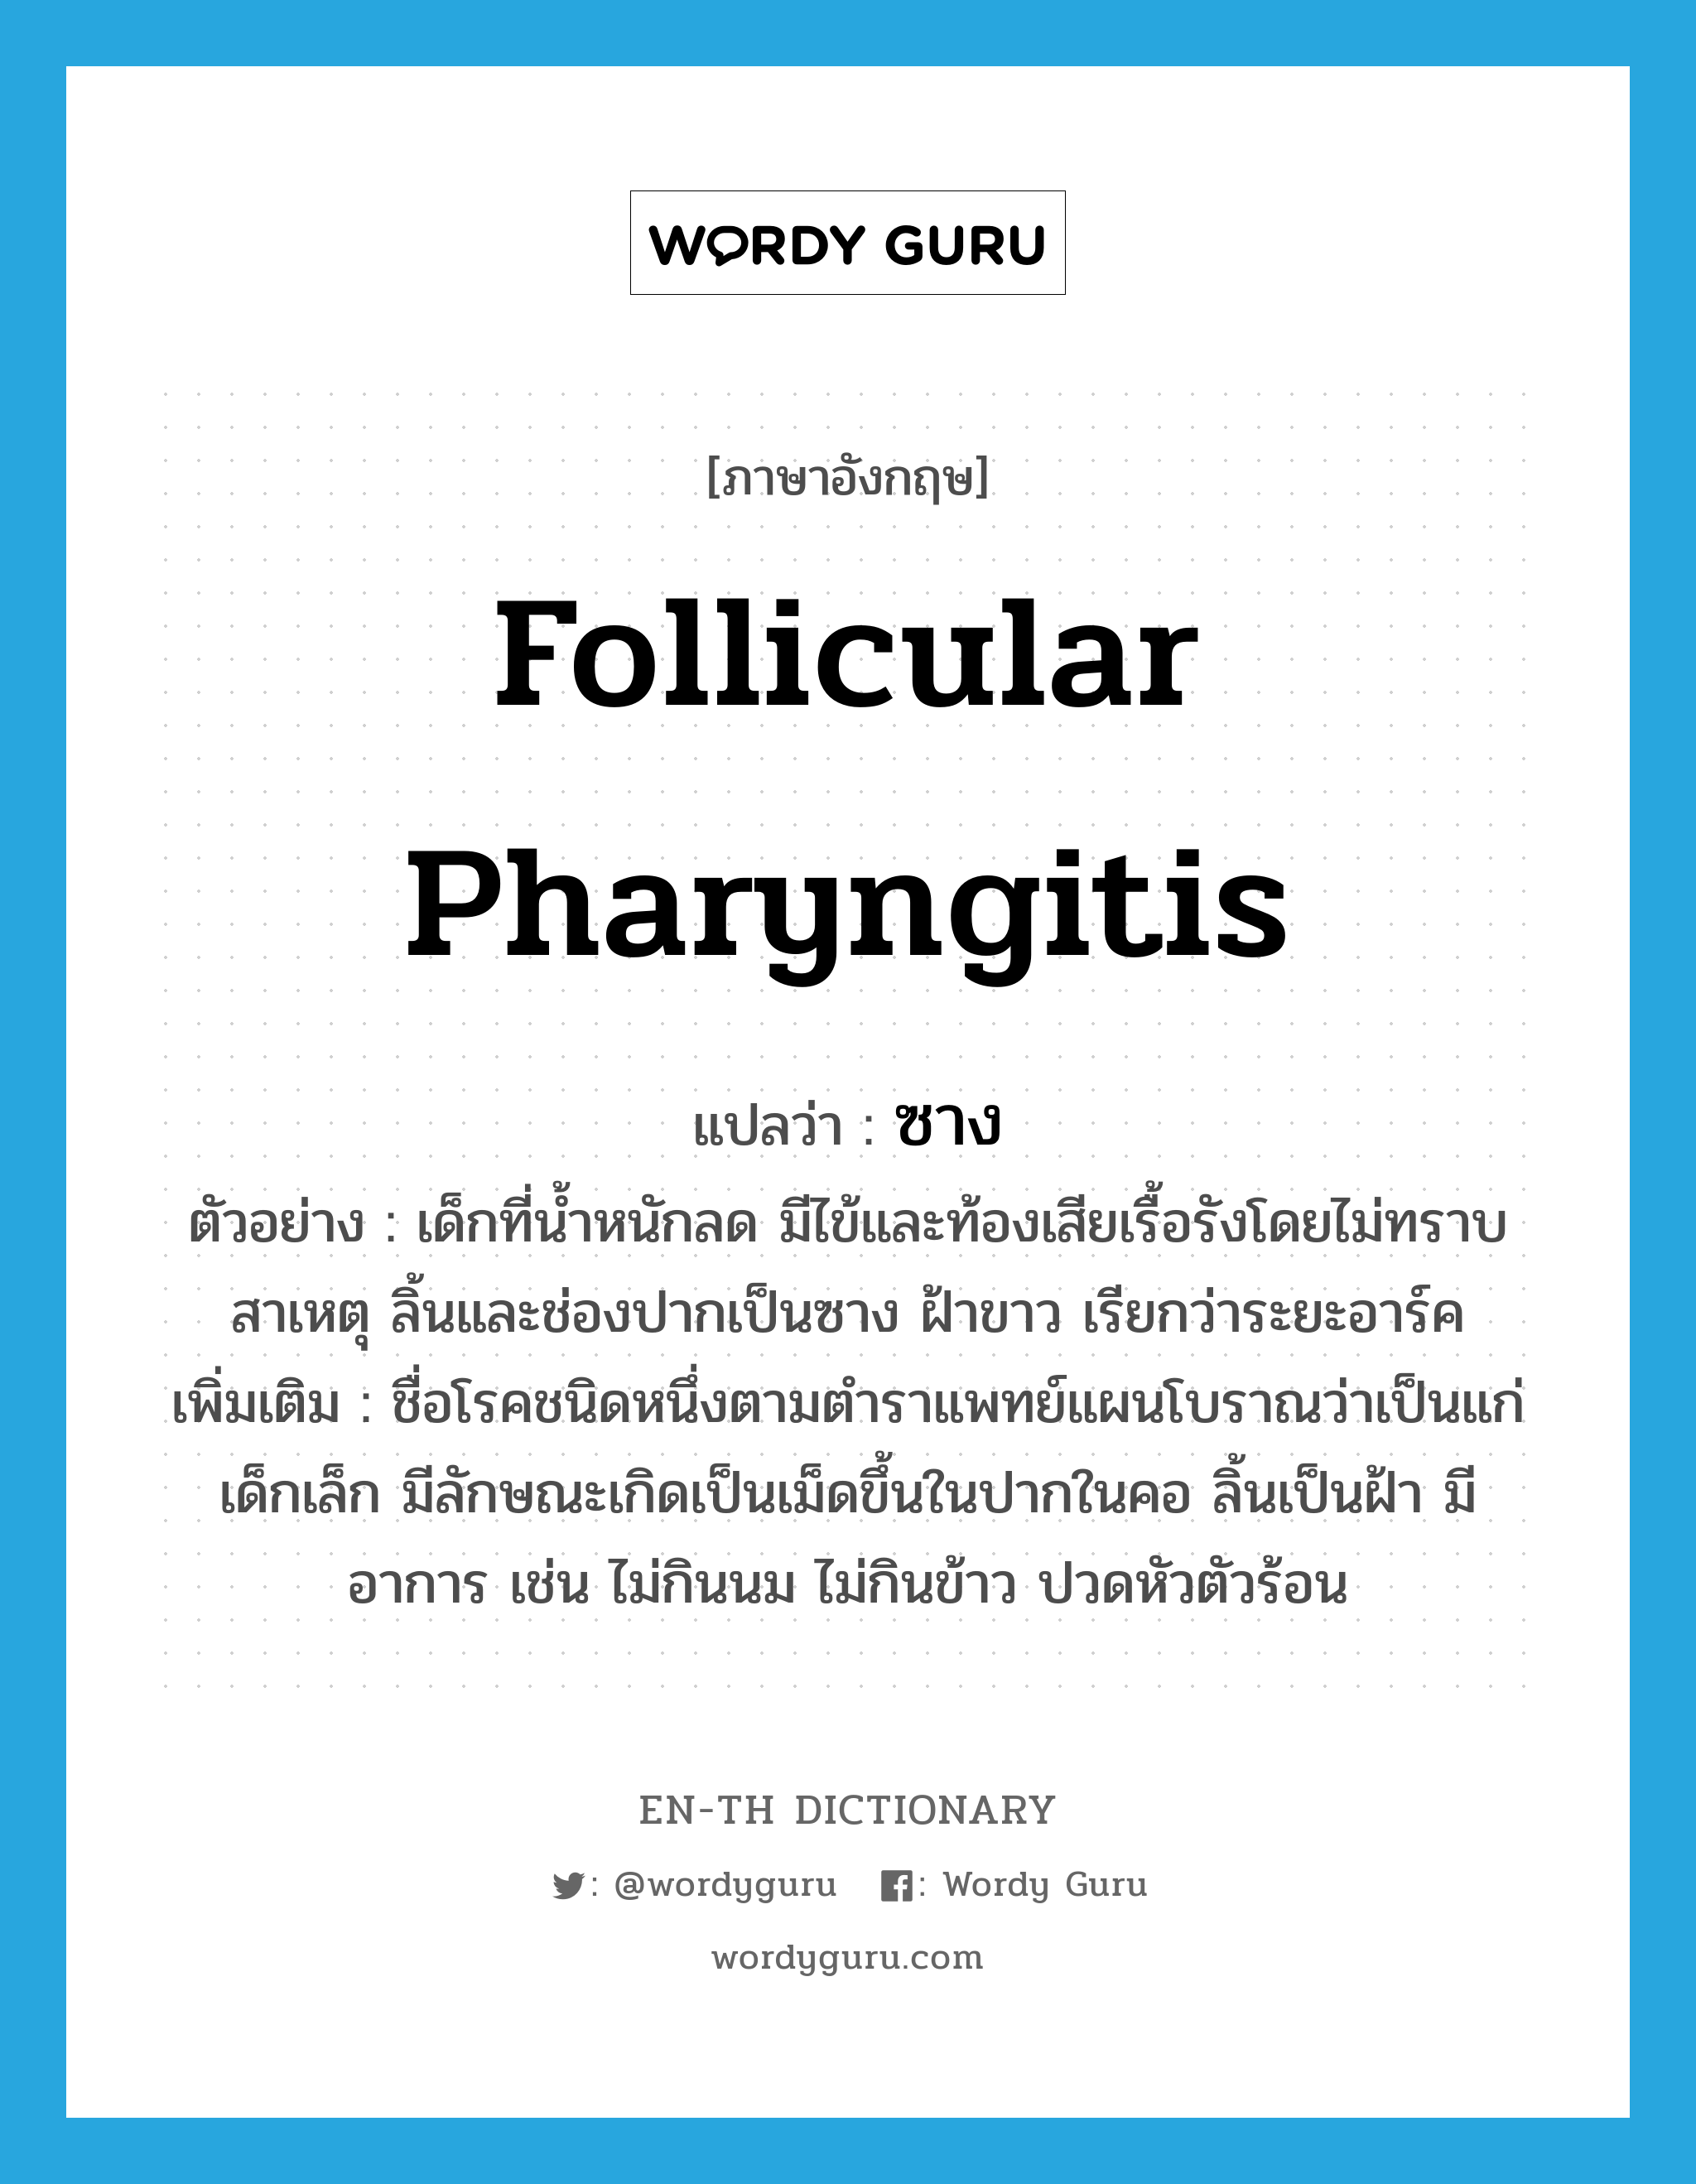 follicular pharyngitis แปลว่า?, คำศัพท์ภาษาอังกฤษ follicular pharyngitis แปลว่า ซาง ประเภท N ตัวอย่าง เด็กที่น้ำหนักลด มีไข้และท้องเสียเรื้อรังโดยไม่ทราบสาเหตุ ลิ้นและช่องปากเป็นซาง ฝ้าขาว เรียกว่าระยะอาร์ค เพิ่มเติม ชื่อโรคชนิดหนึ่งตามตำราแพทย์แผนโบราณว่าเป็นแก่เด็กเล็ก มีลักษณะเกิดเป็นเม็ดขึ้นในปากในคอ ลิ้นเป็นฝ้า มีอาการ เช่น ไม่กินนม ไม่กินข้าว ปวดหัวตัวร้อน หมวด N